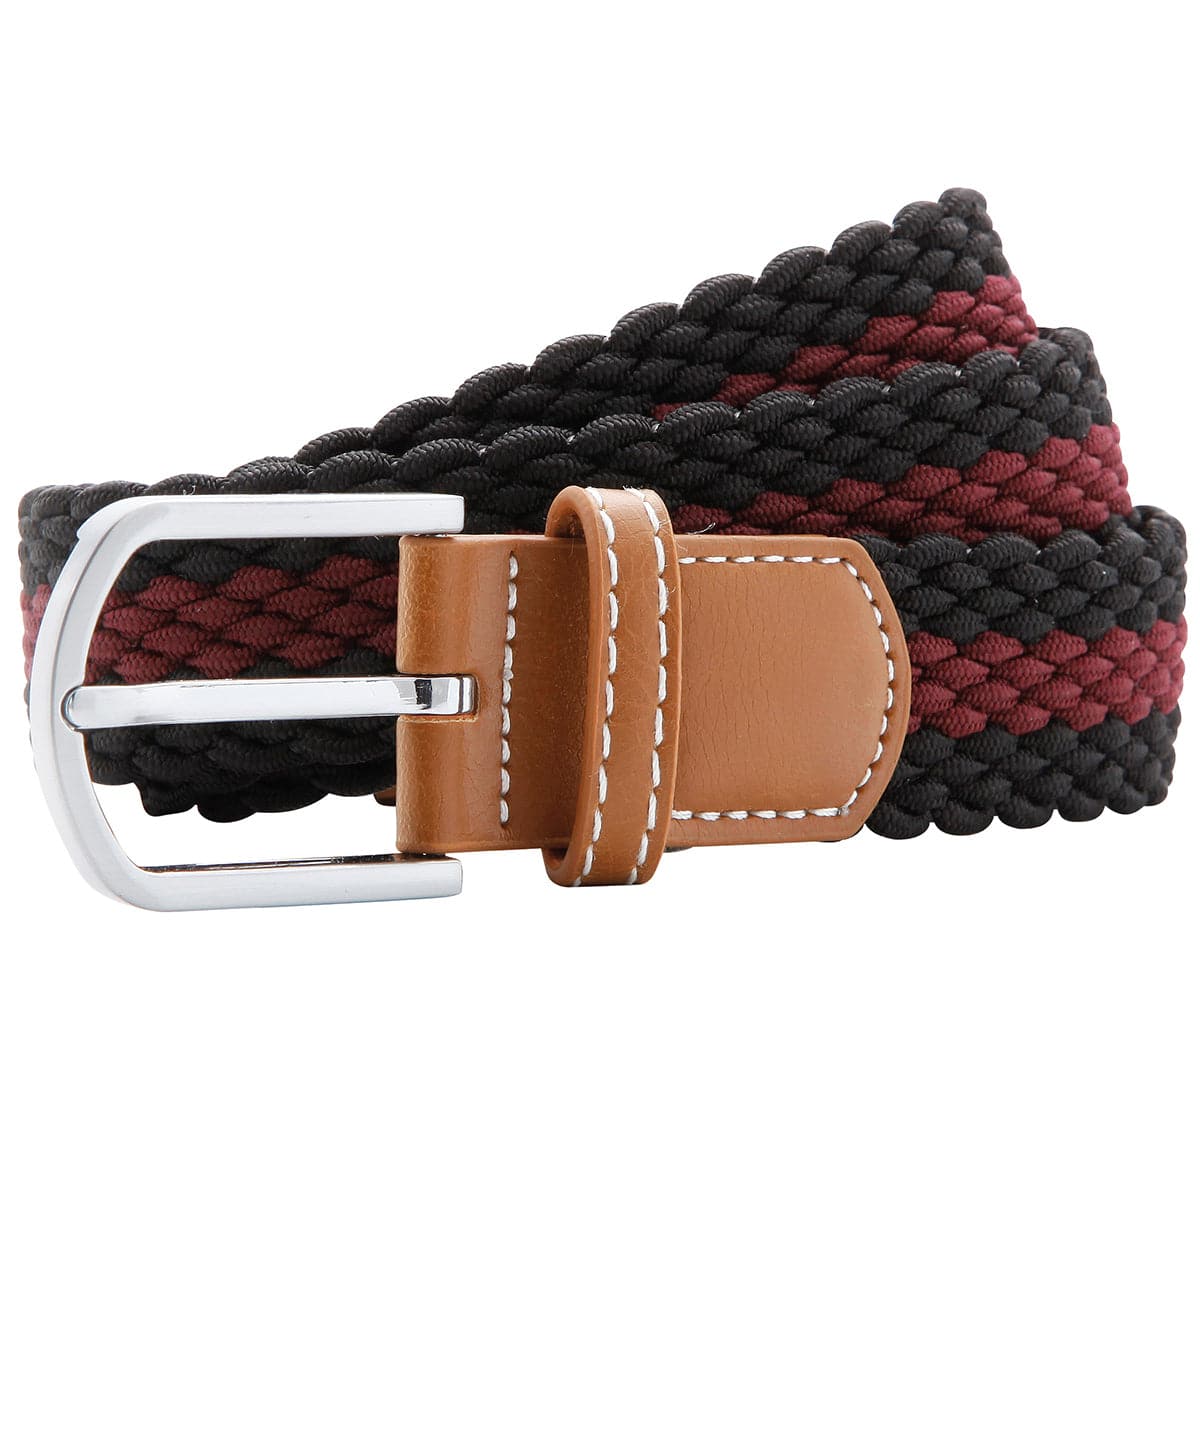 Black/Burgundy - Two-colour stripe braid stretch belt